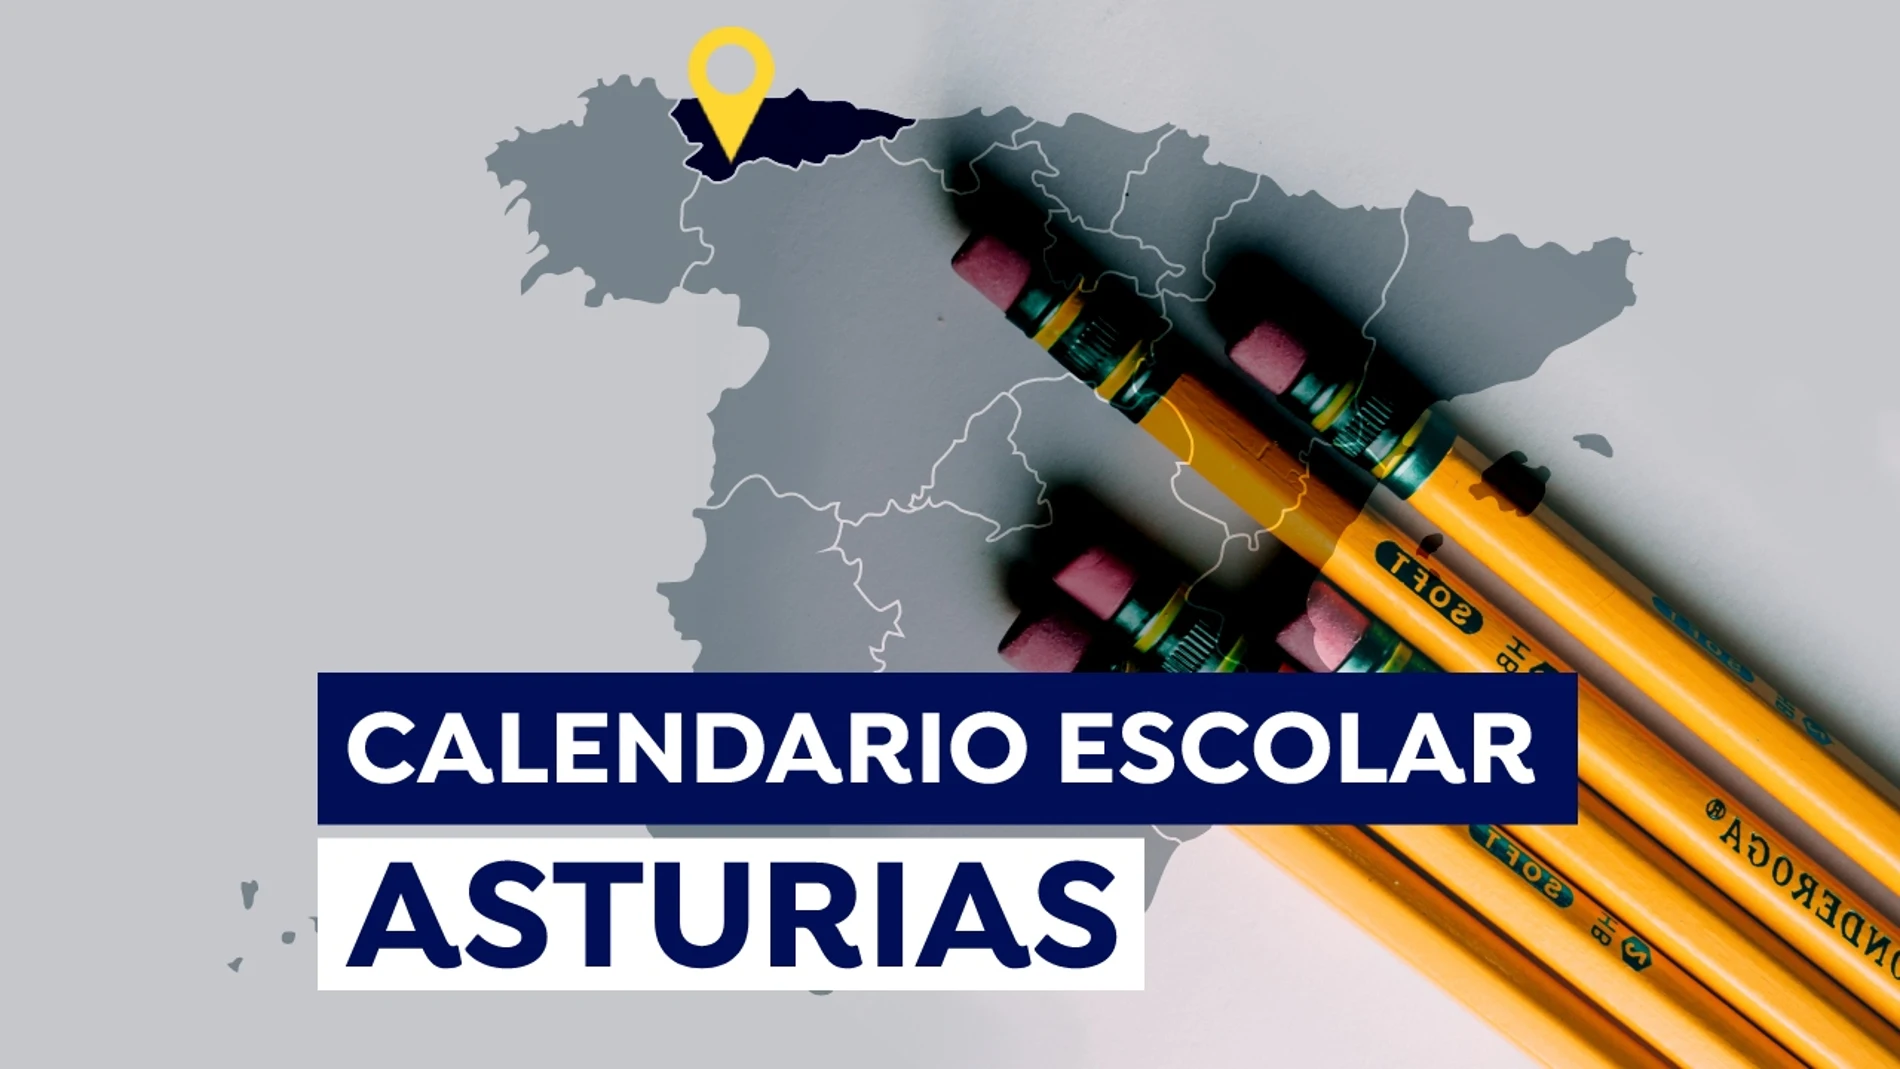 Calendario escolar en Asturias 2021-2022: Fechas de inicio de las clases, días lectivos y vacaciones